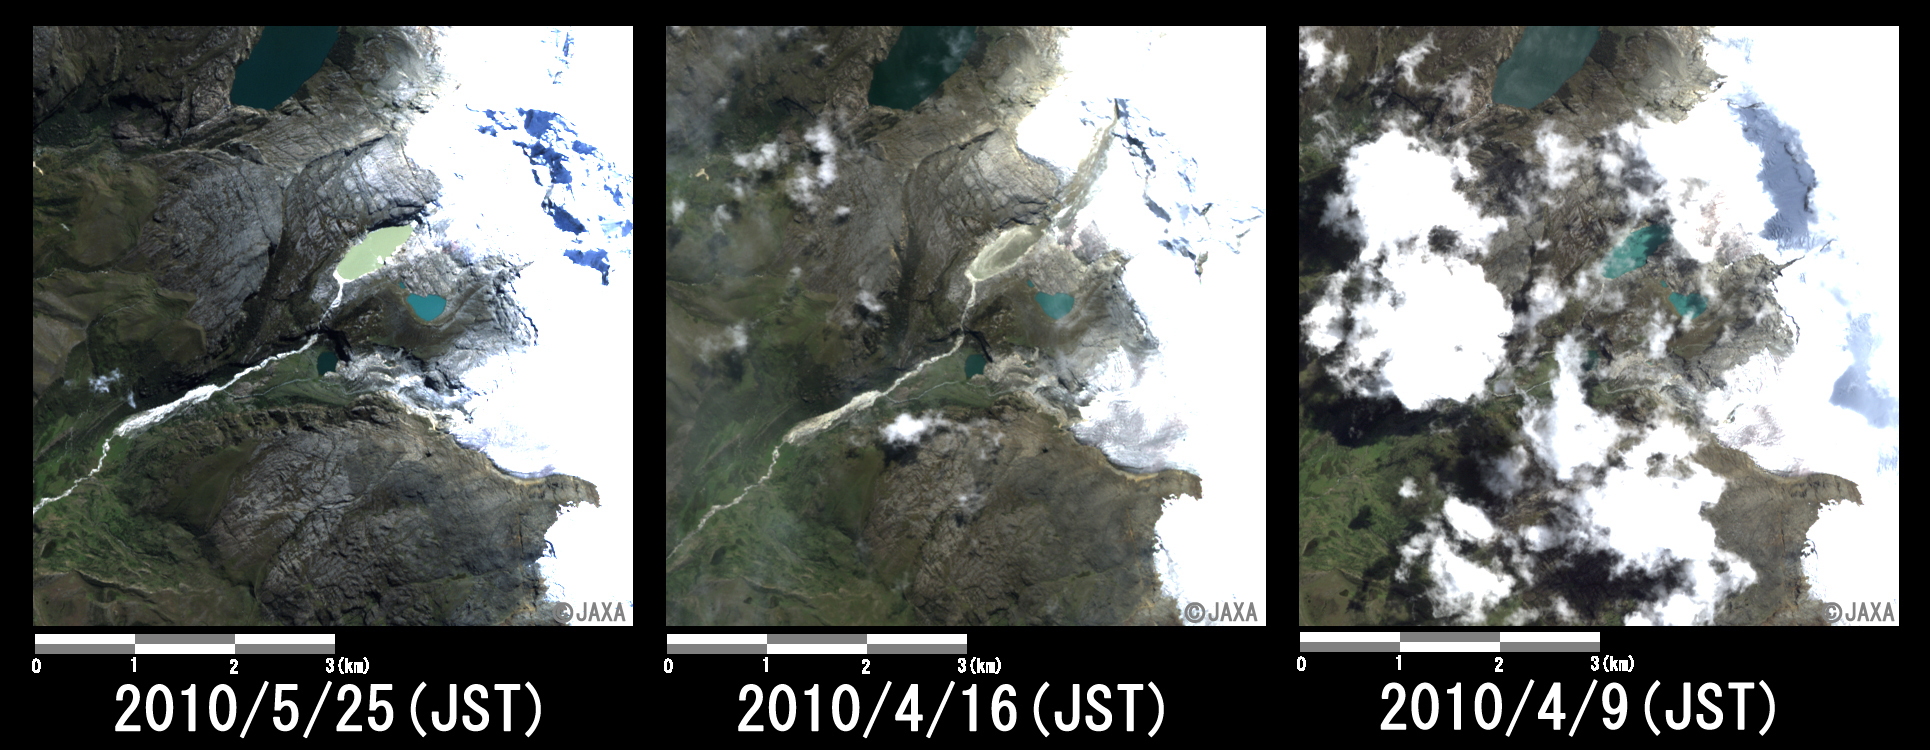 図3: 氷河が崩落したと考えられる湖の拡大(それぞれ約6km四方)